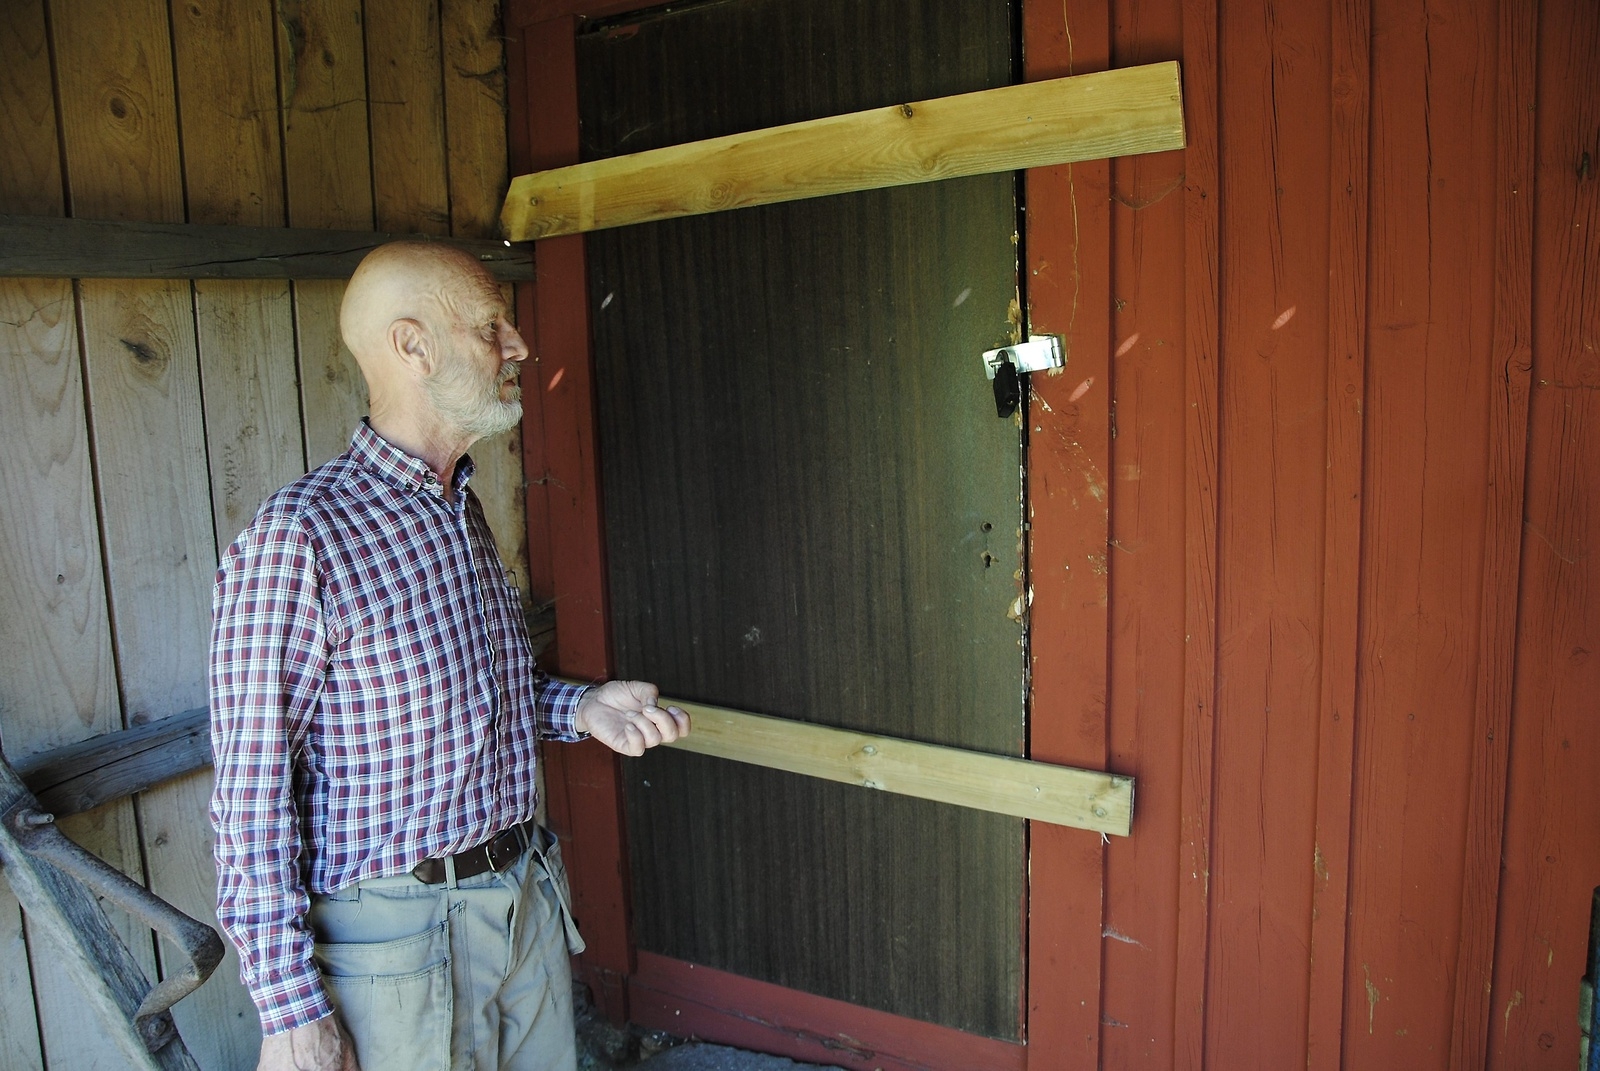 Dörren som bröts upp har spikats igen. Lars-Åke Ljungdahl, ordförande i Osby hembygdsförening, är mycket orolig över skadegörelsen.